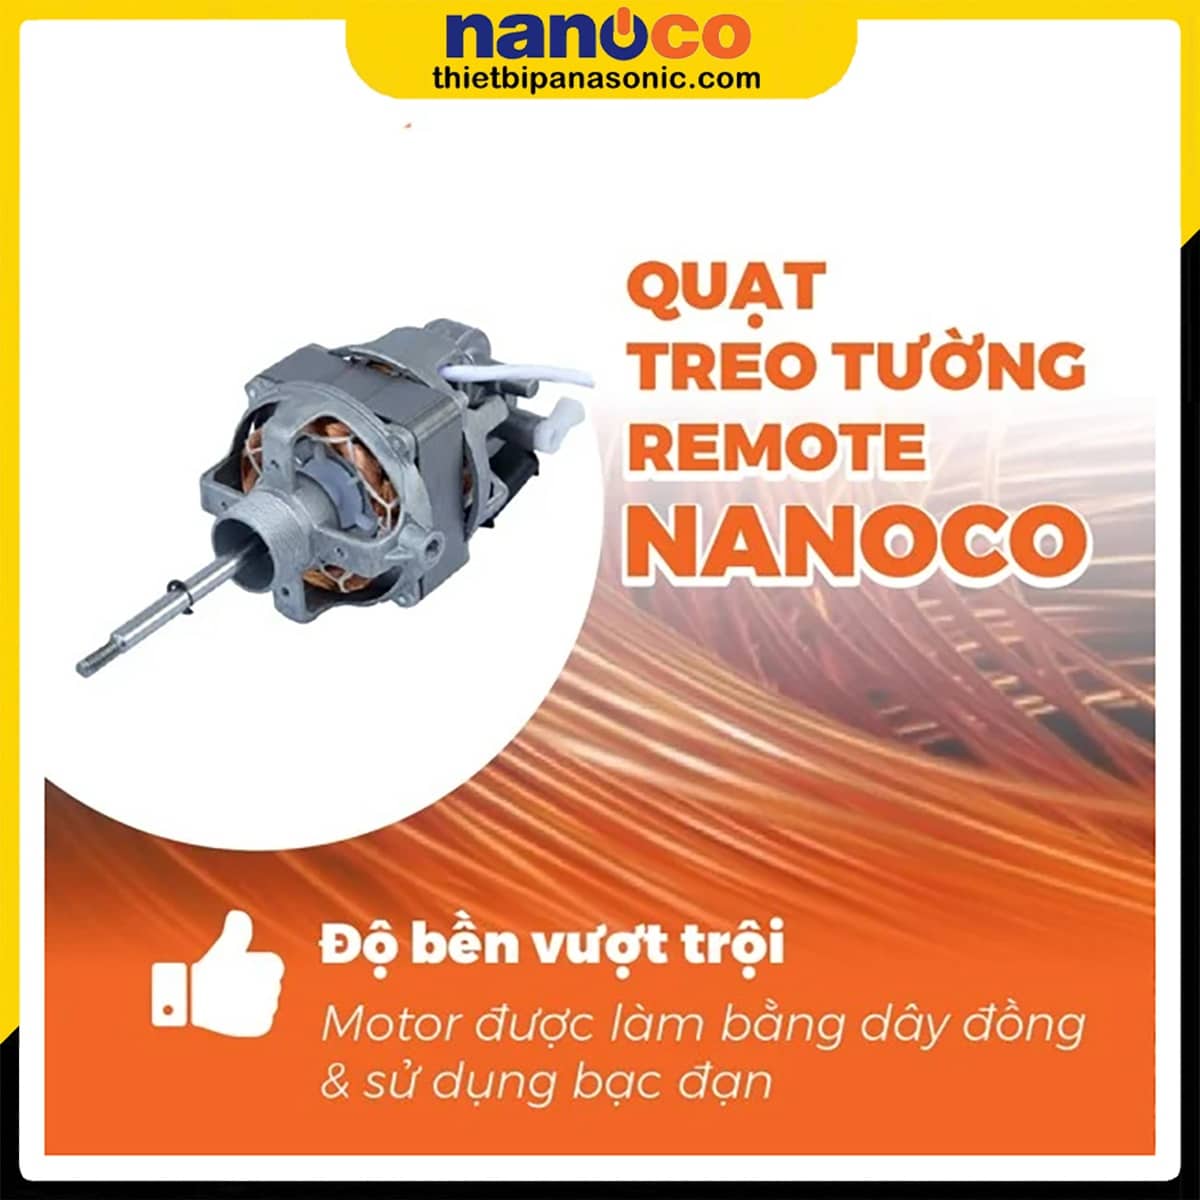 Quạt treo tường Nanoco NWF1610RC-BE có độ bền vượt trội nhờ sử dụng động cơ dây đồng và bạc đạn (vòng bi)